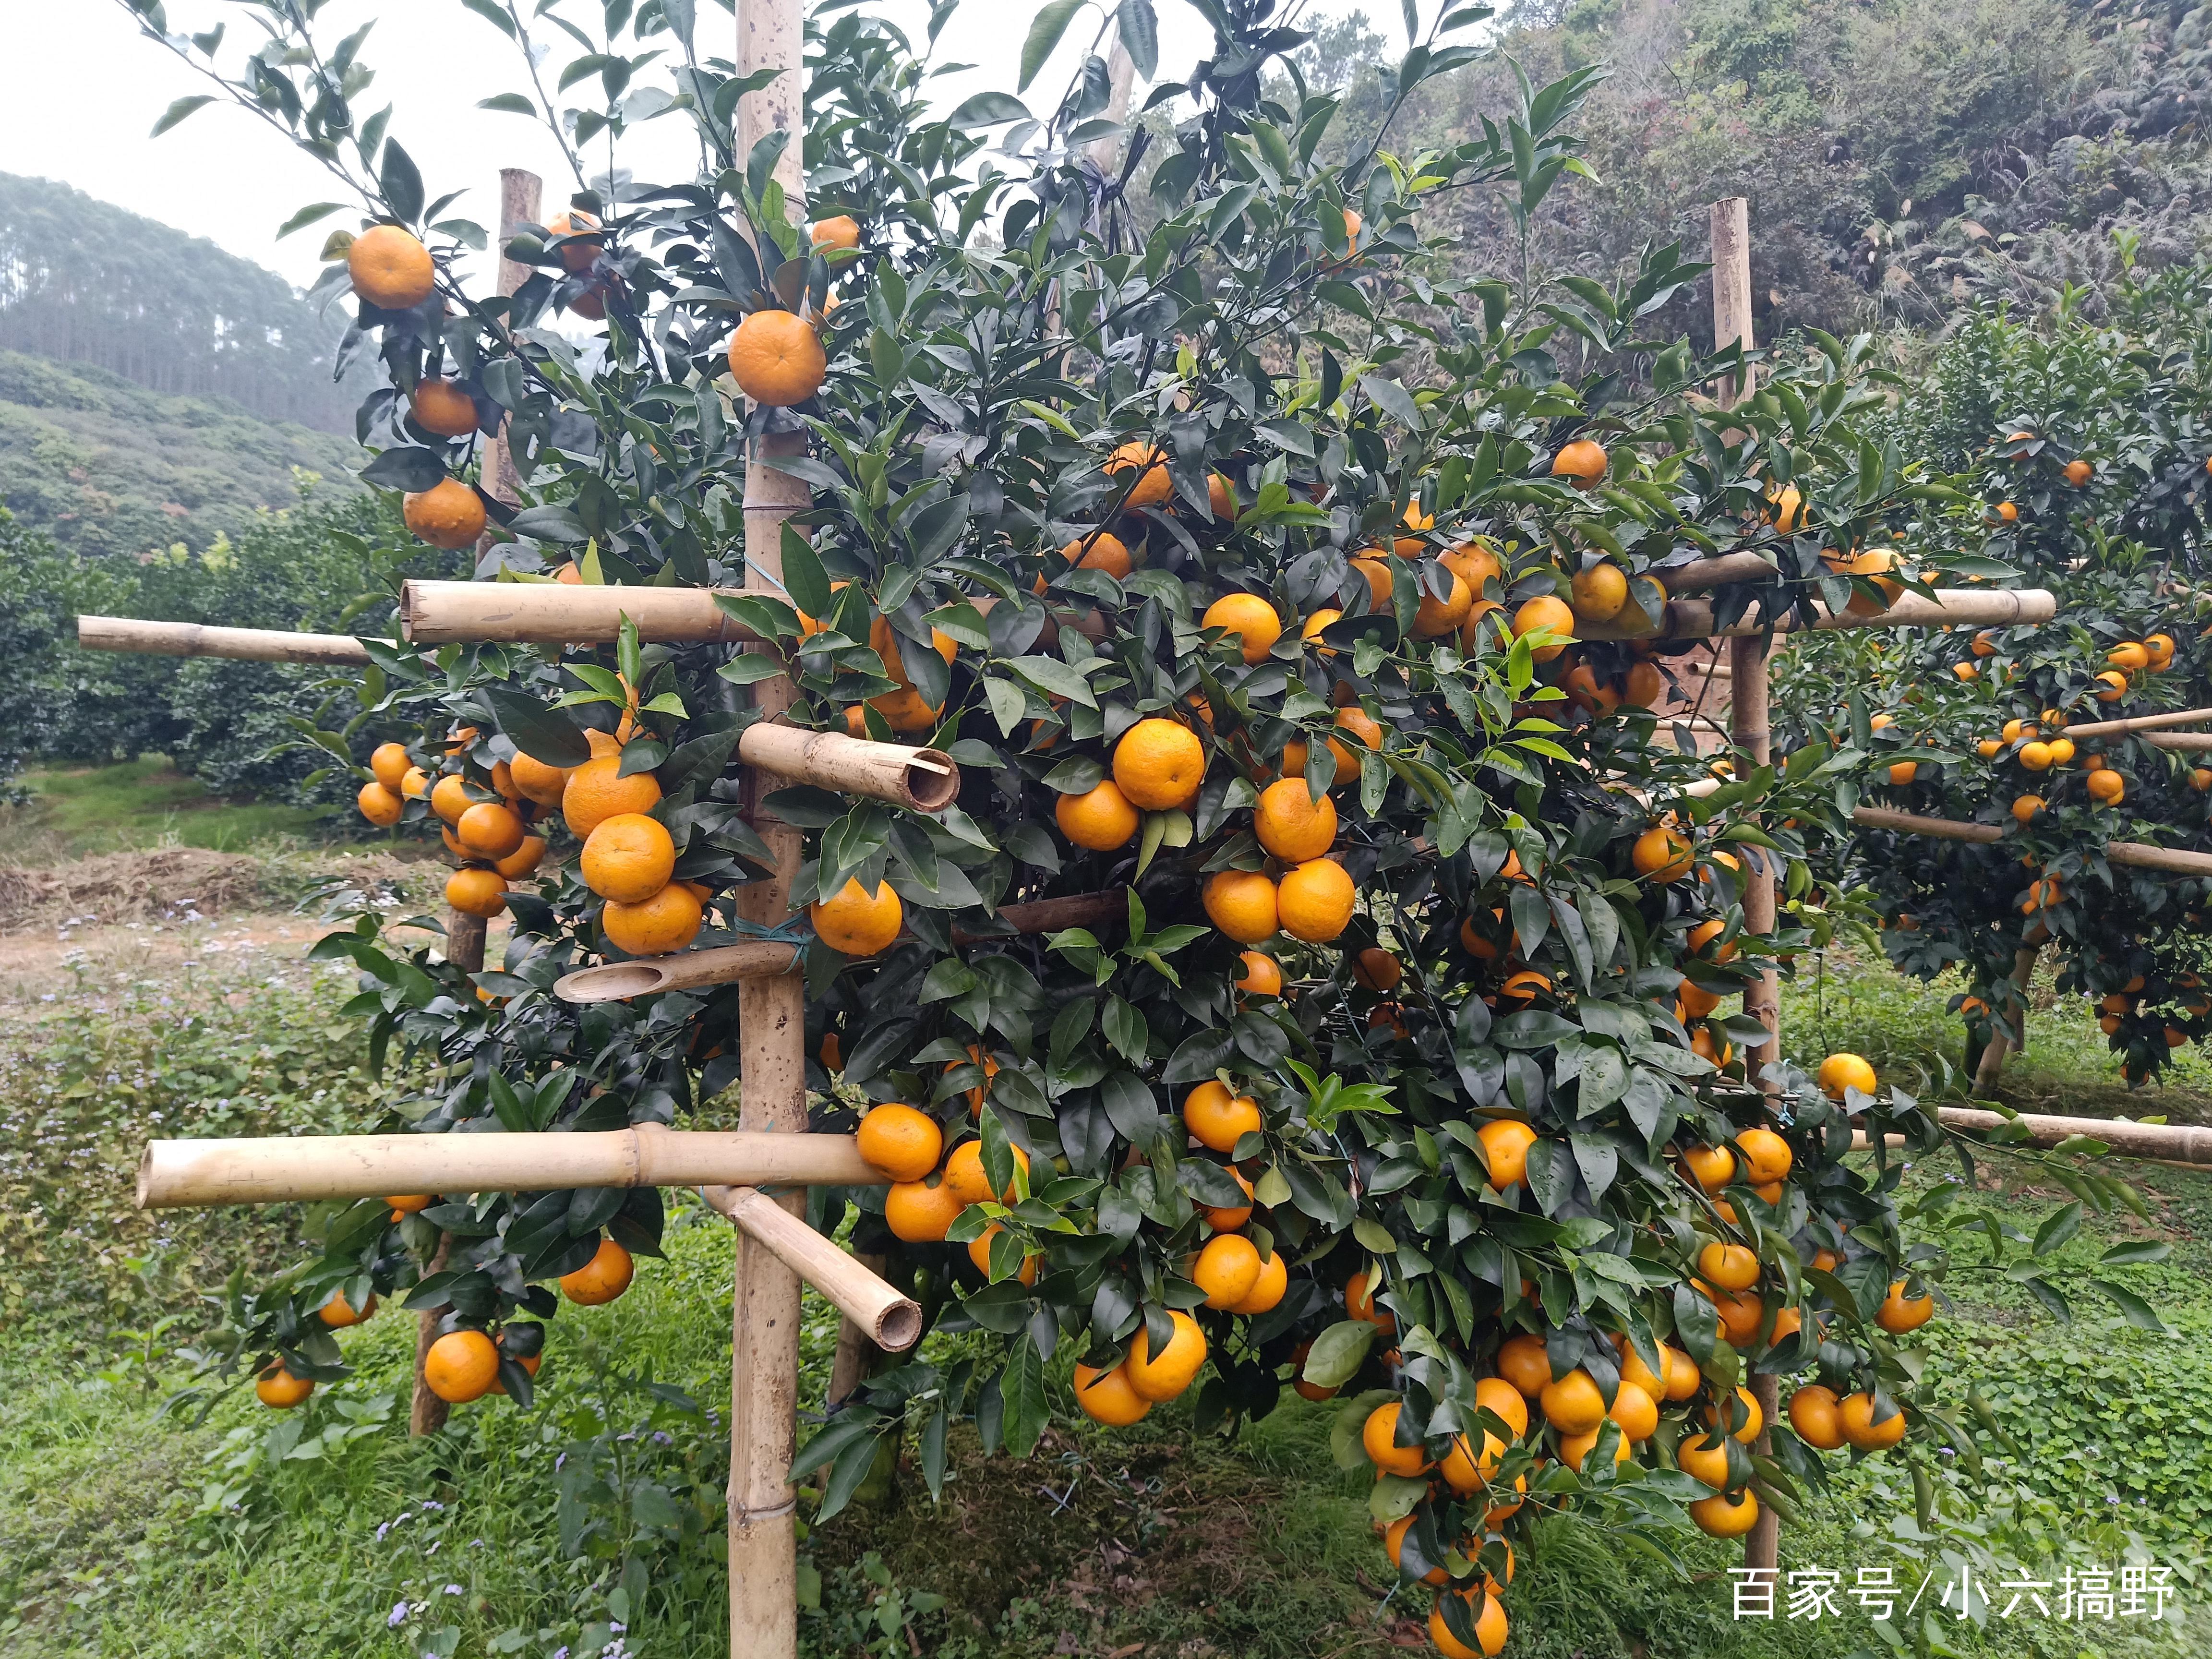 柑橘中的一匹黑马--沃柑,已成为家里的水果新宠